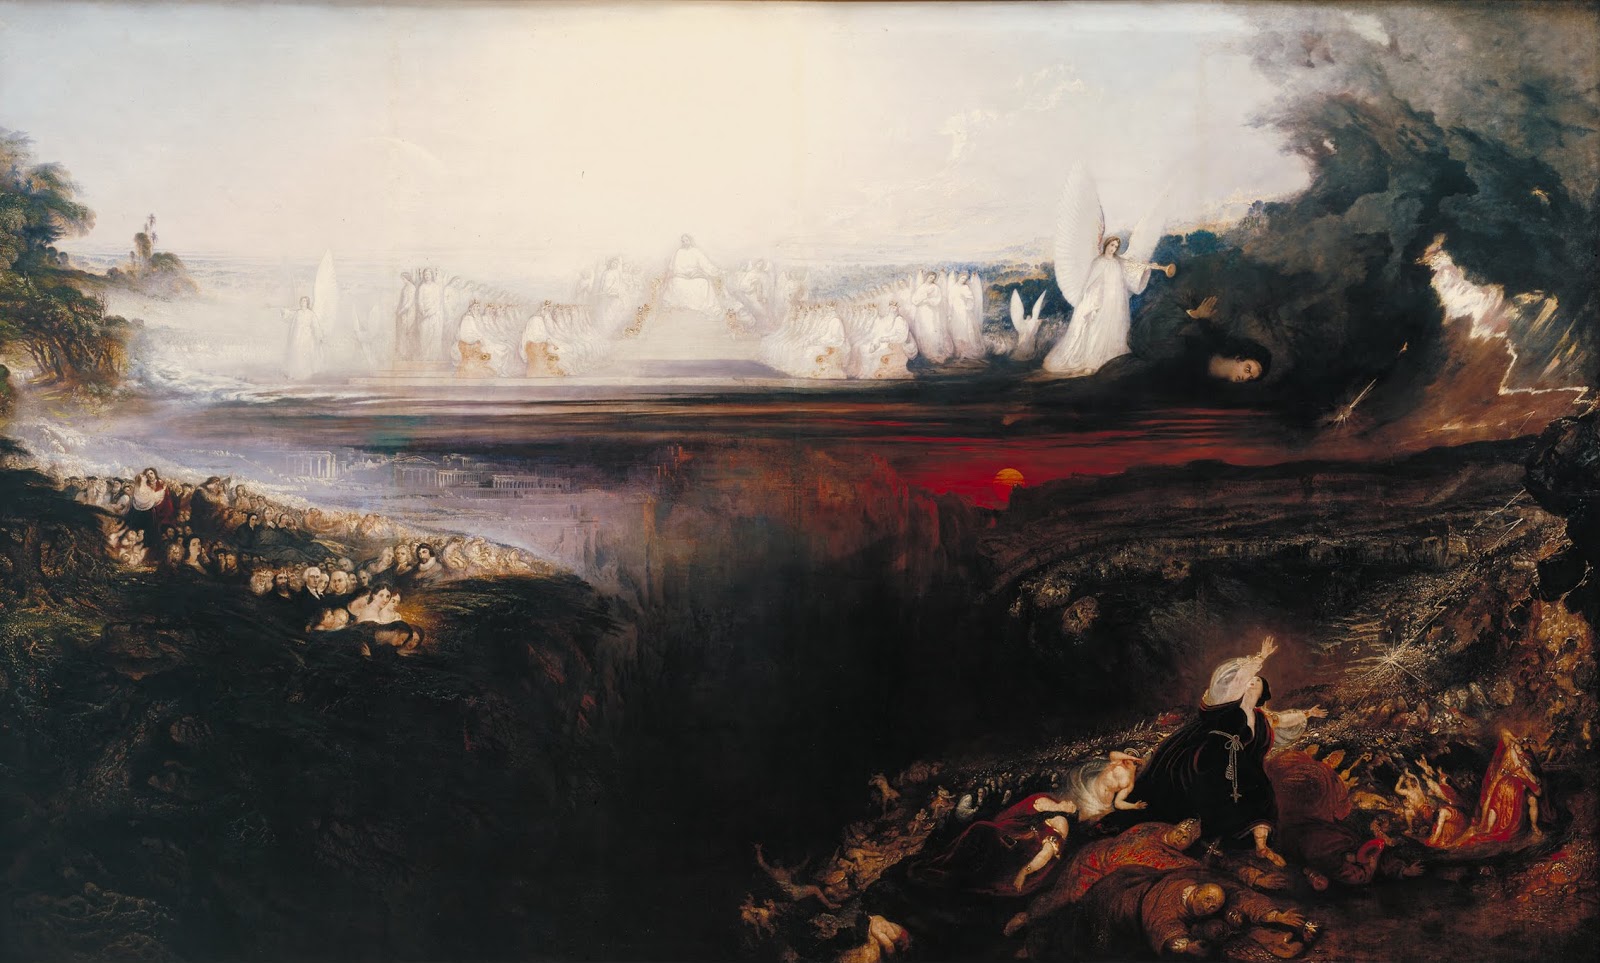 John+Martin+Landscape-1789-1854 (37).jpg